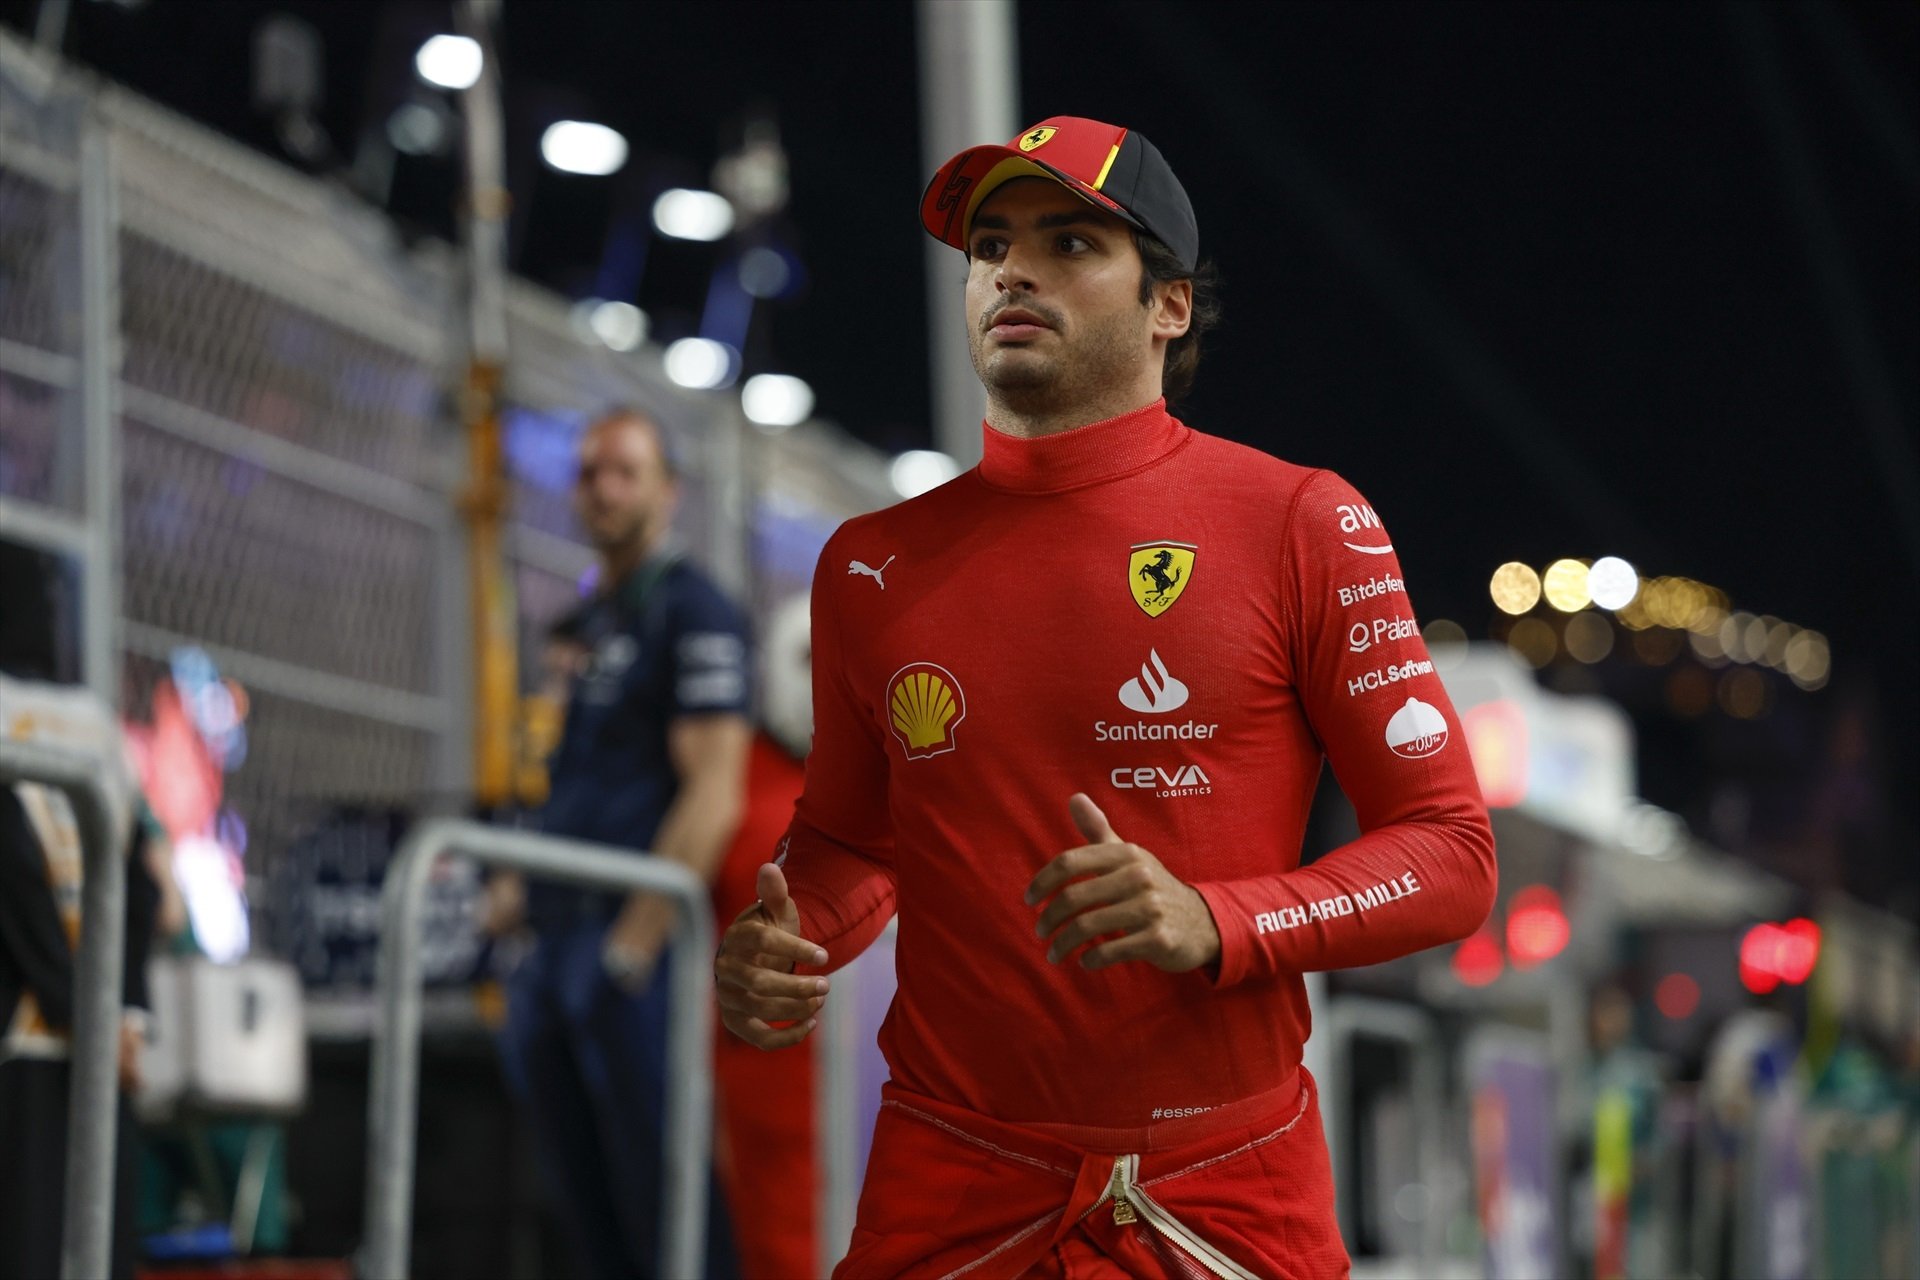 Carlos Sainz, 2 ofertas para salir del Ferrari, una es para atrás, pero la otra es una oportunidad